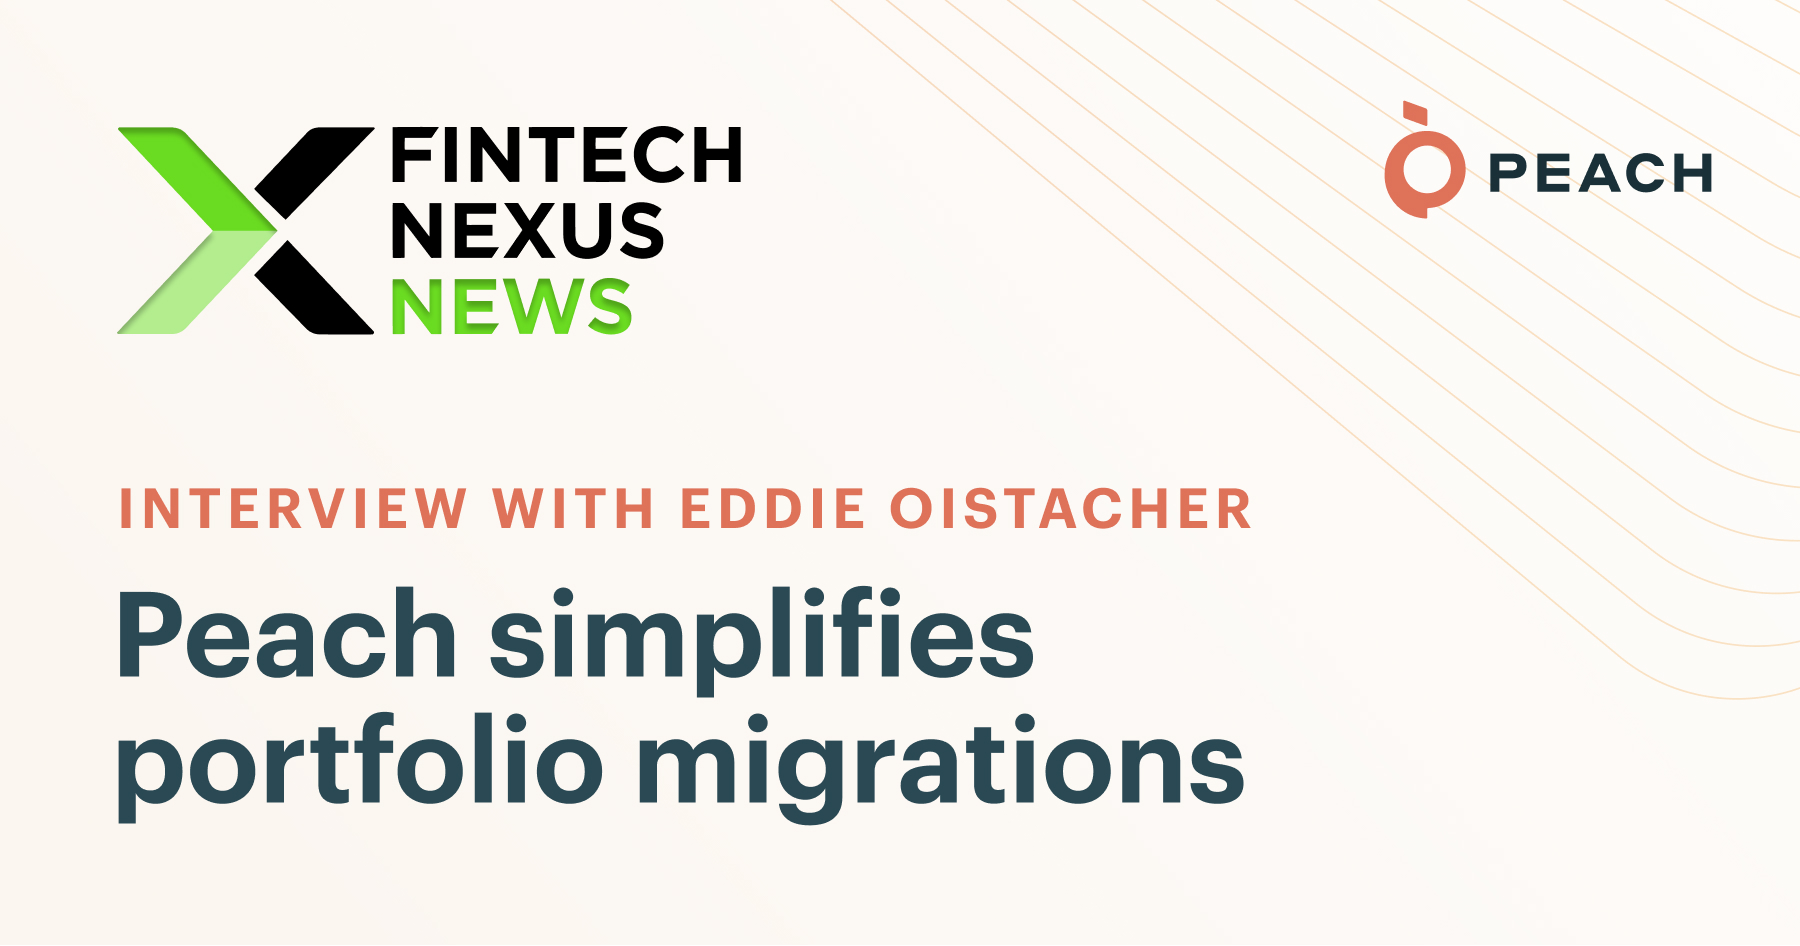 Fintech Nexus News interviews Eddie Oistacher, CEO of Peach, about portfolio migrations